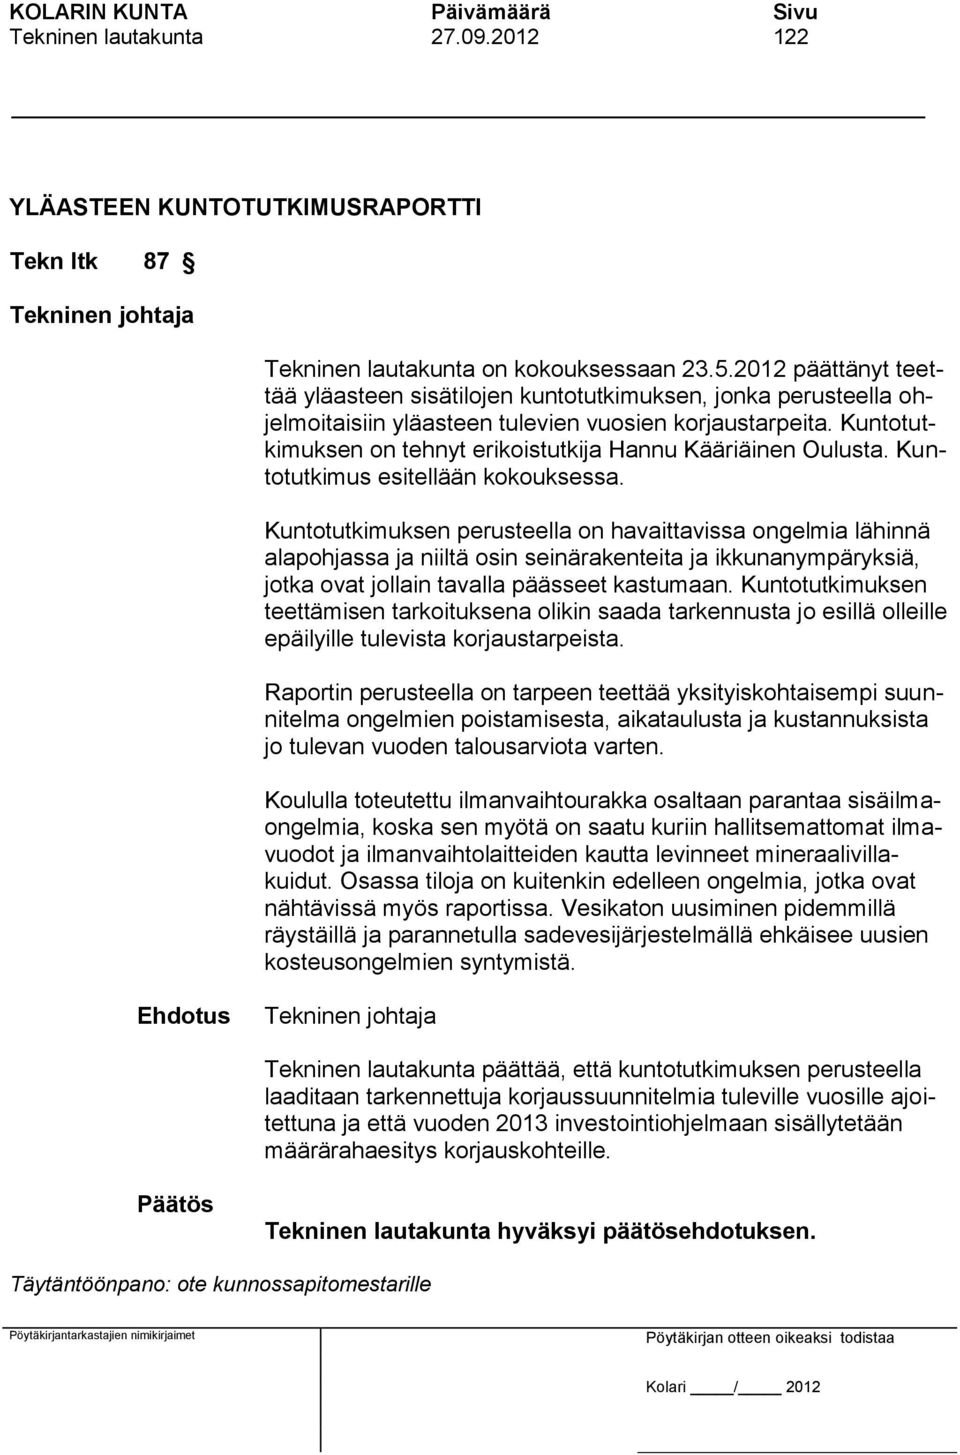 Kuntotutkimuksen on tehnyt erikoistutkija Hannu Kääriäinen Oulusta. Kuntotutkimus esitellään kokouksessa.